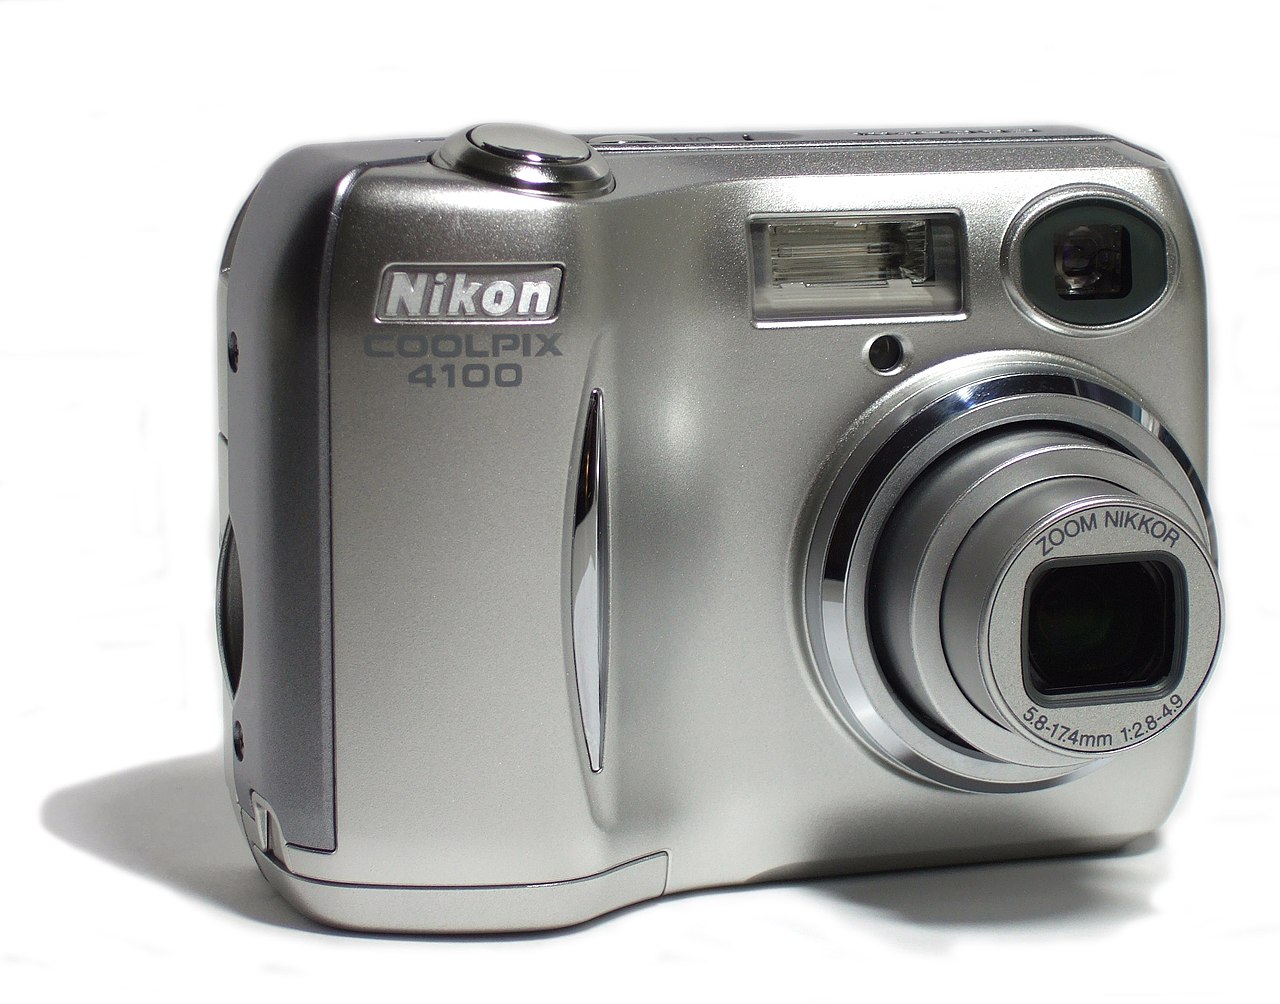 File:Nikon 4100.jpg - Wikipedia